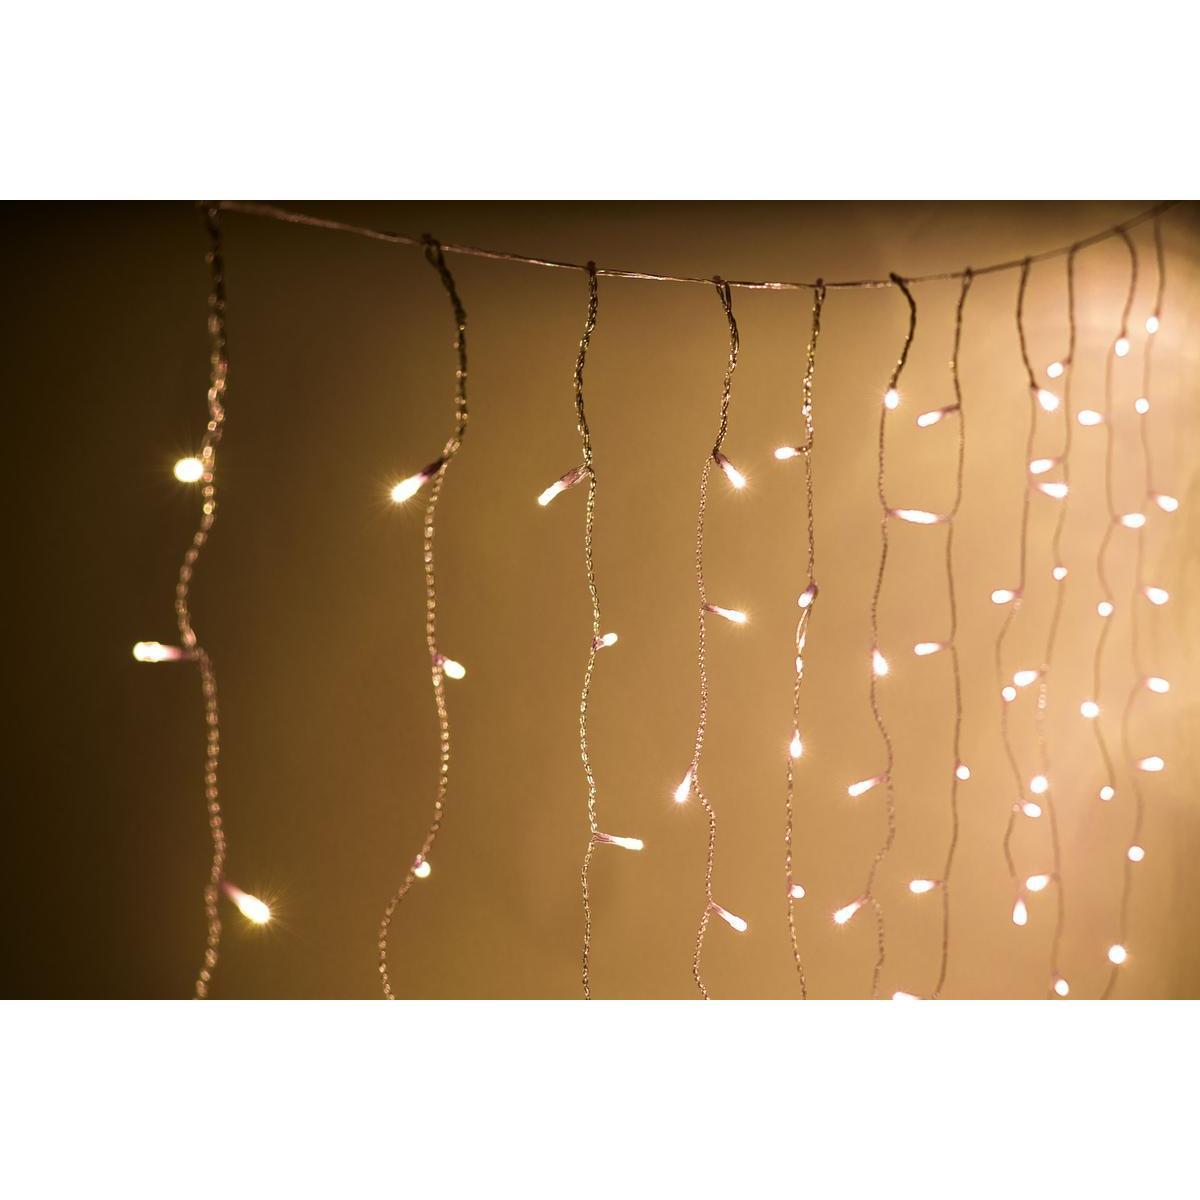 Guirlande électrique solaire rideau lumineux 100 LED - L 200 x H 50 cm - Blanc chaud